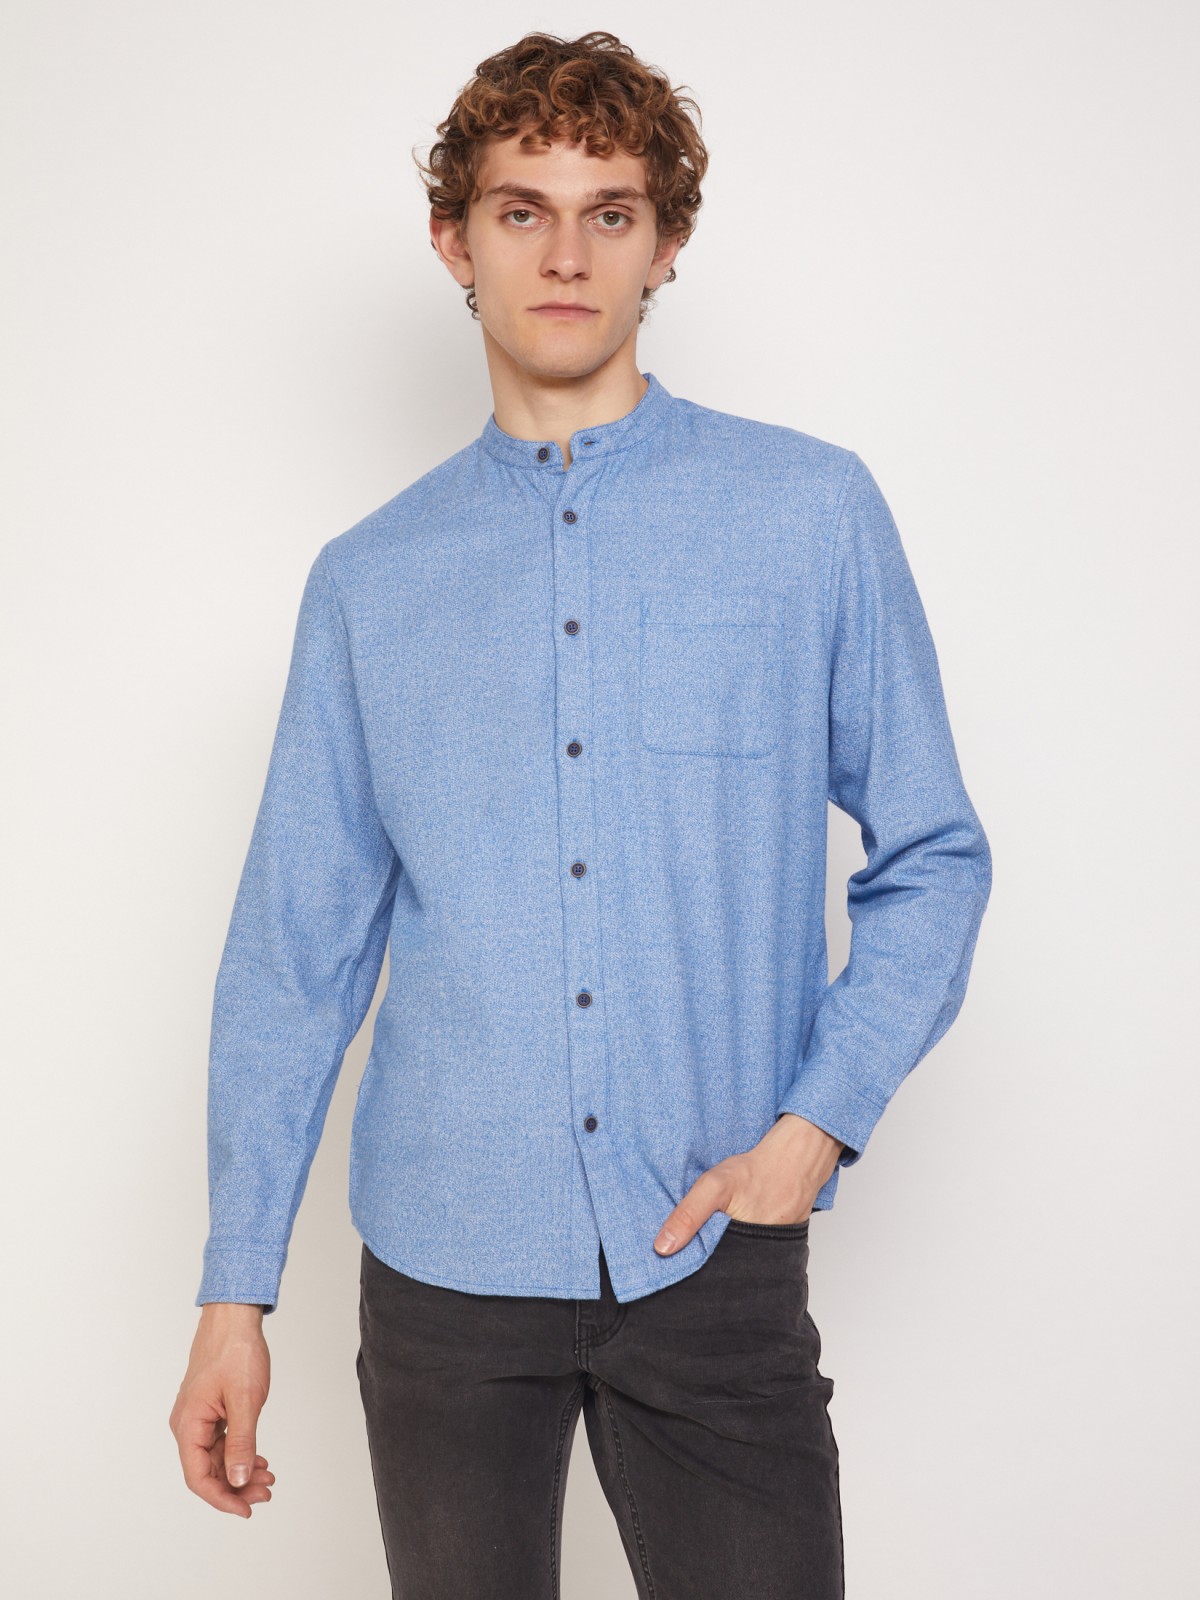 Фланелевая рубашка с воротником-стойкой zolla 211342191021, цвет голубой, размер S - фото 2